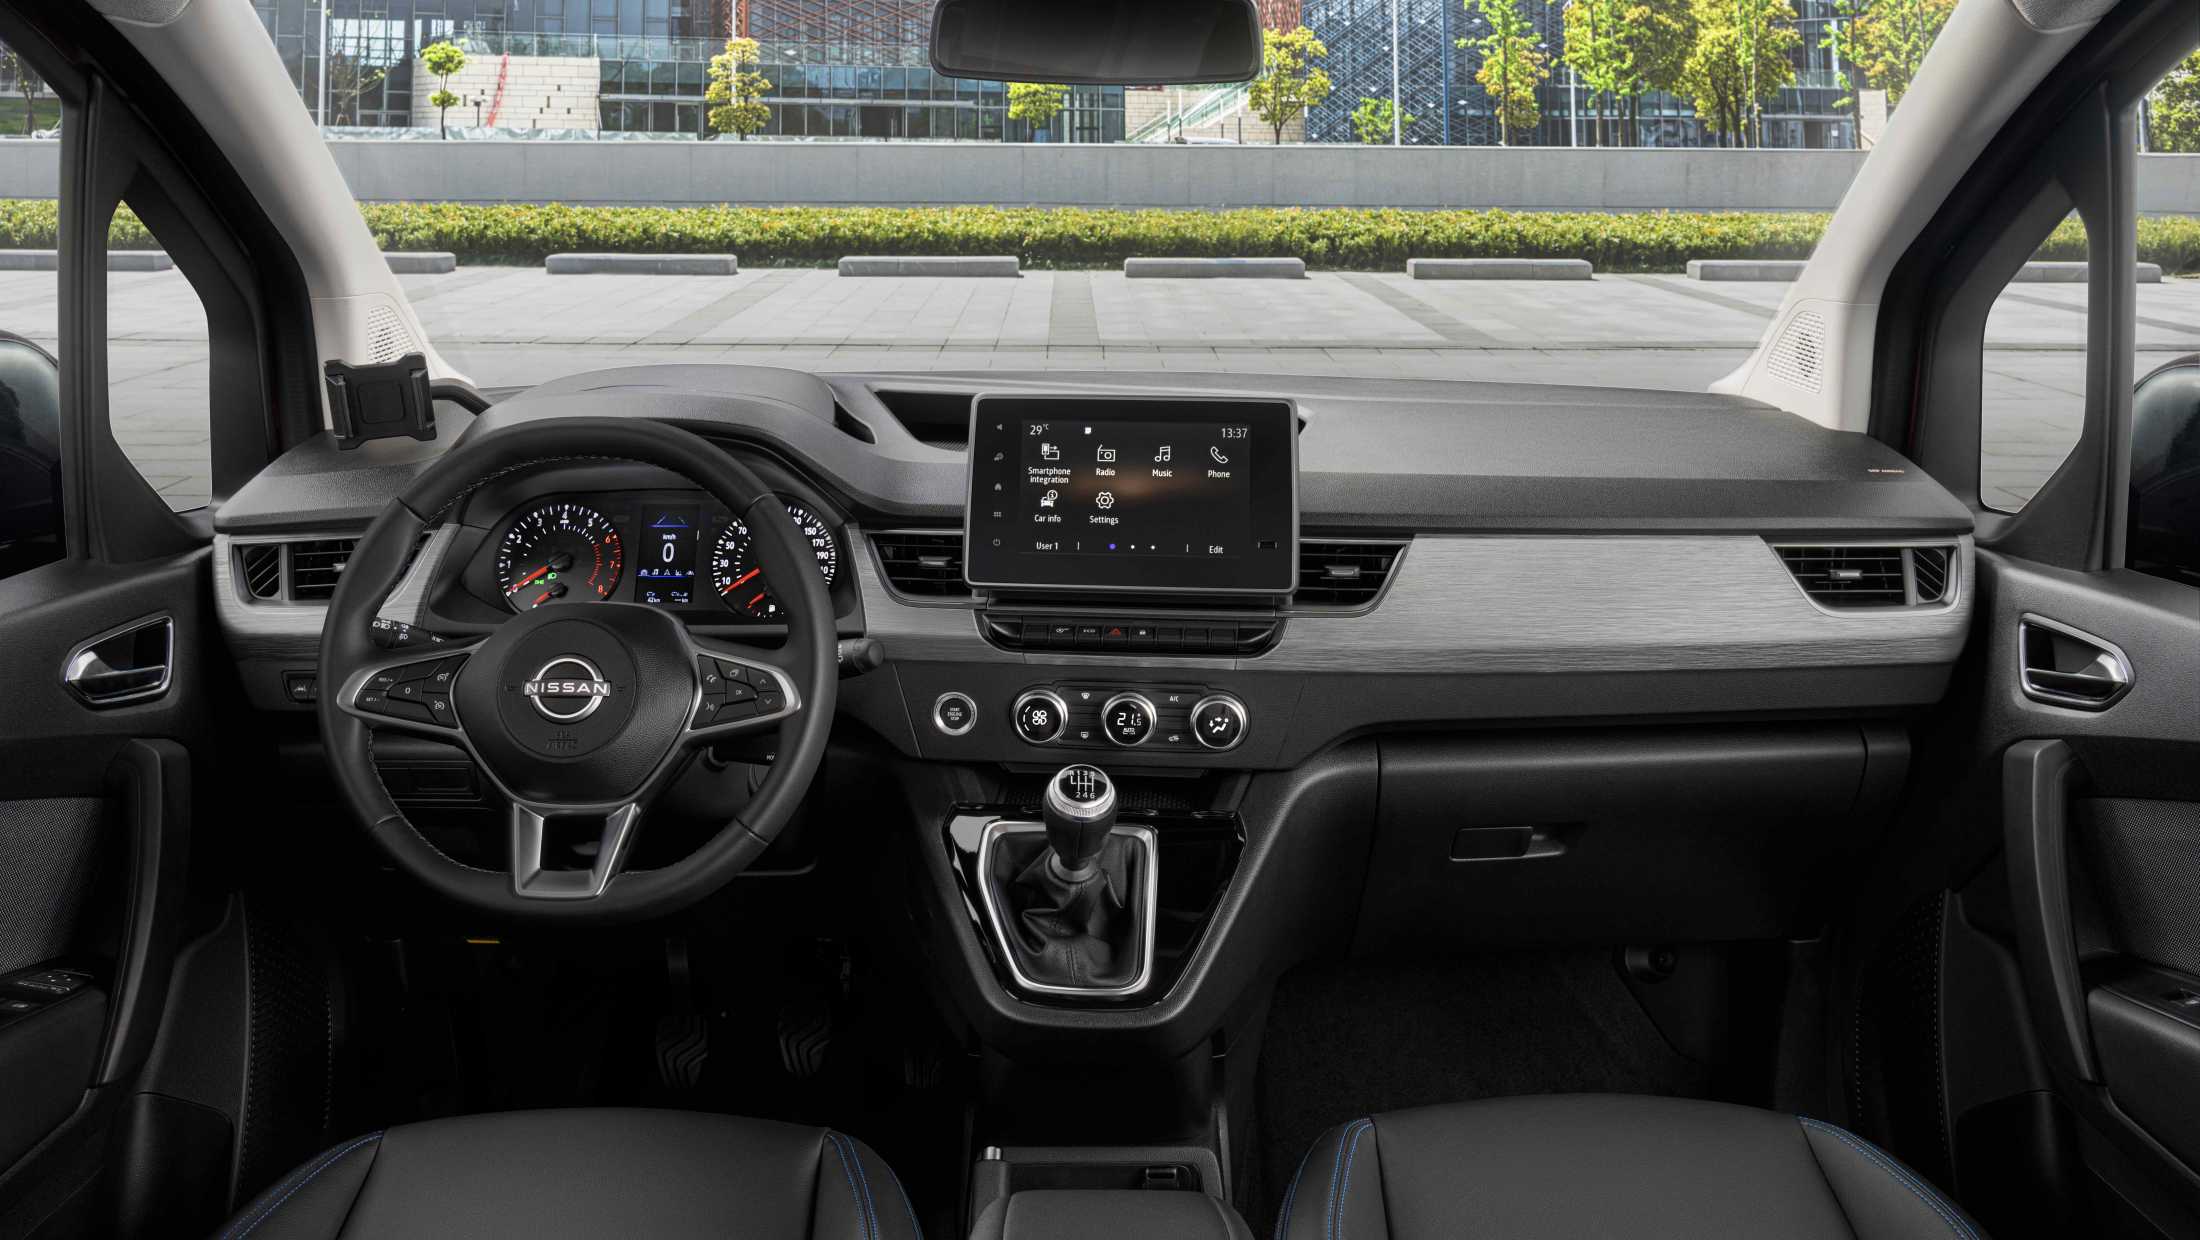 ABD Nissan - Townstar - Meer dan 20 technologieen waaronder apple carplay en android auto